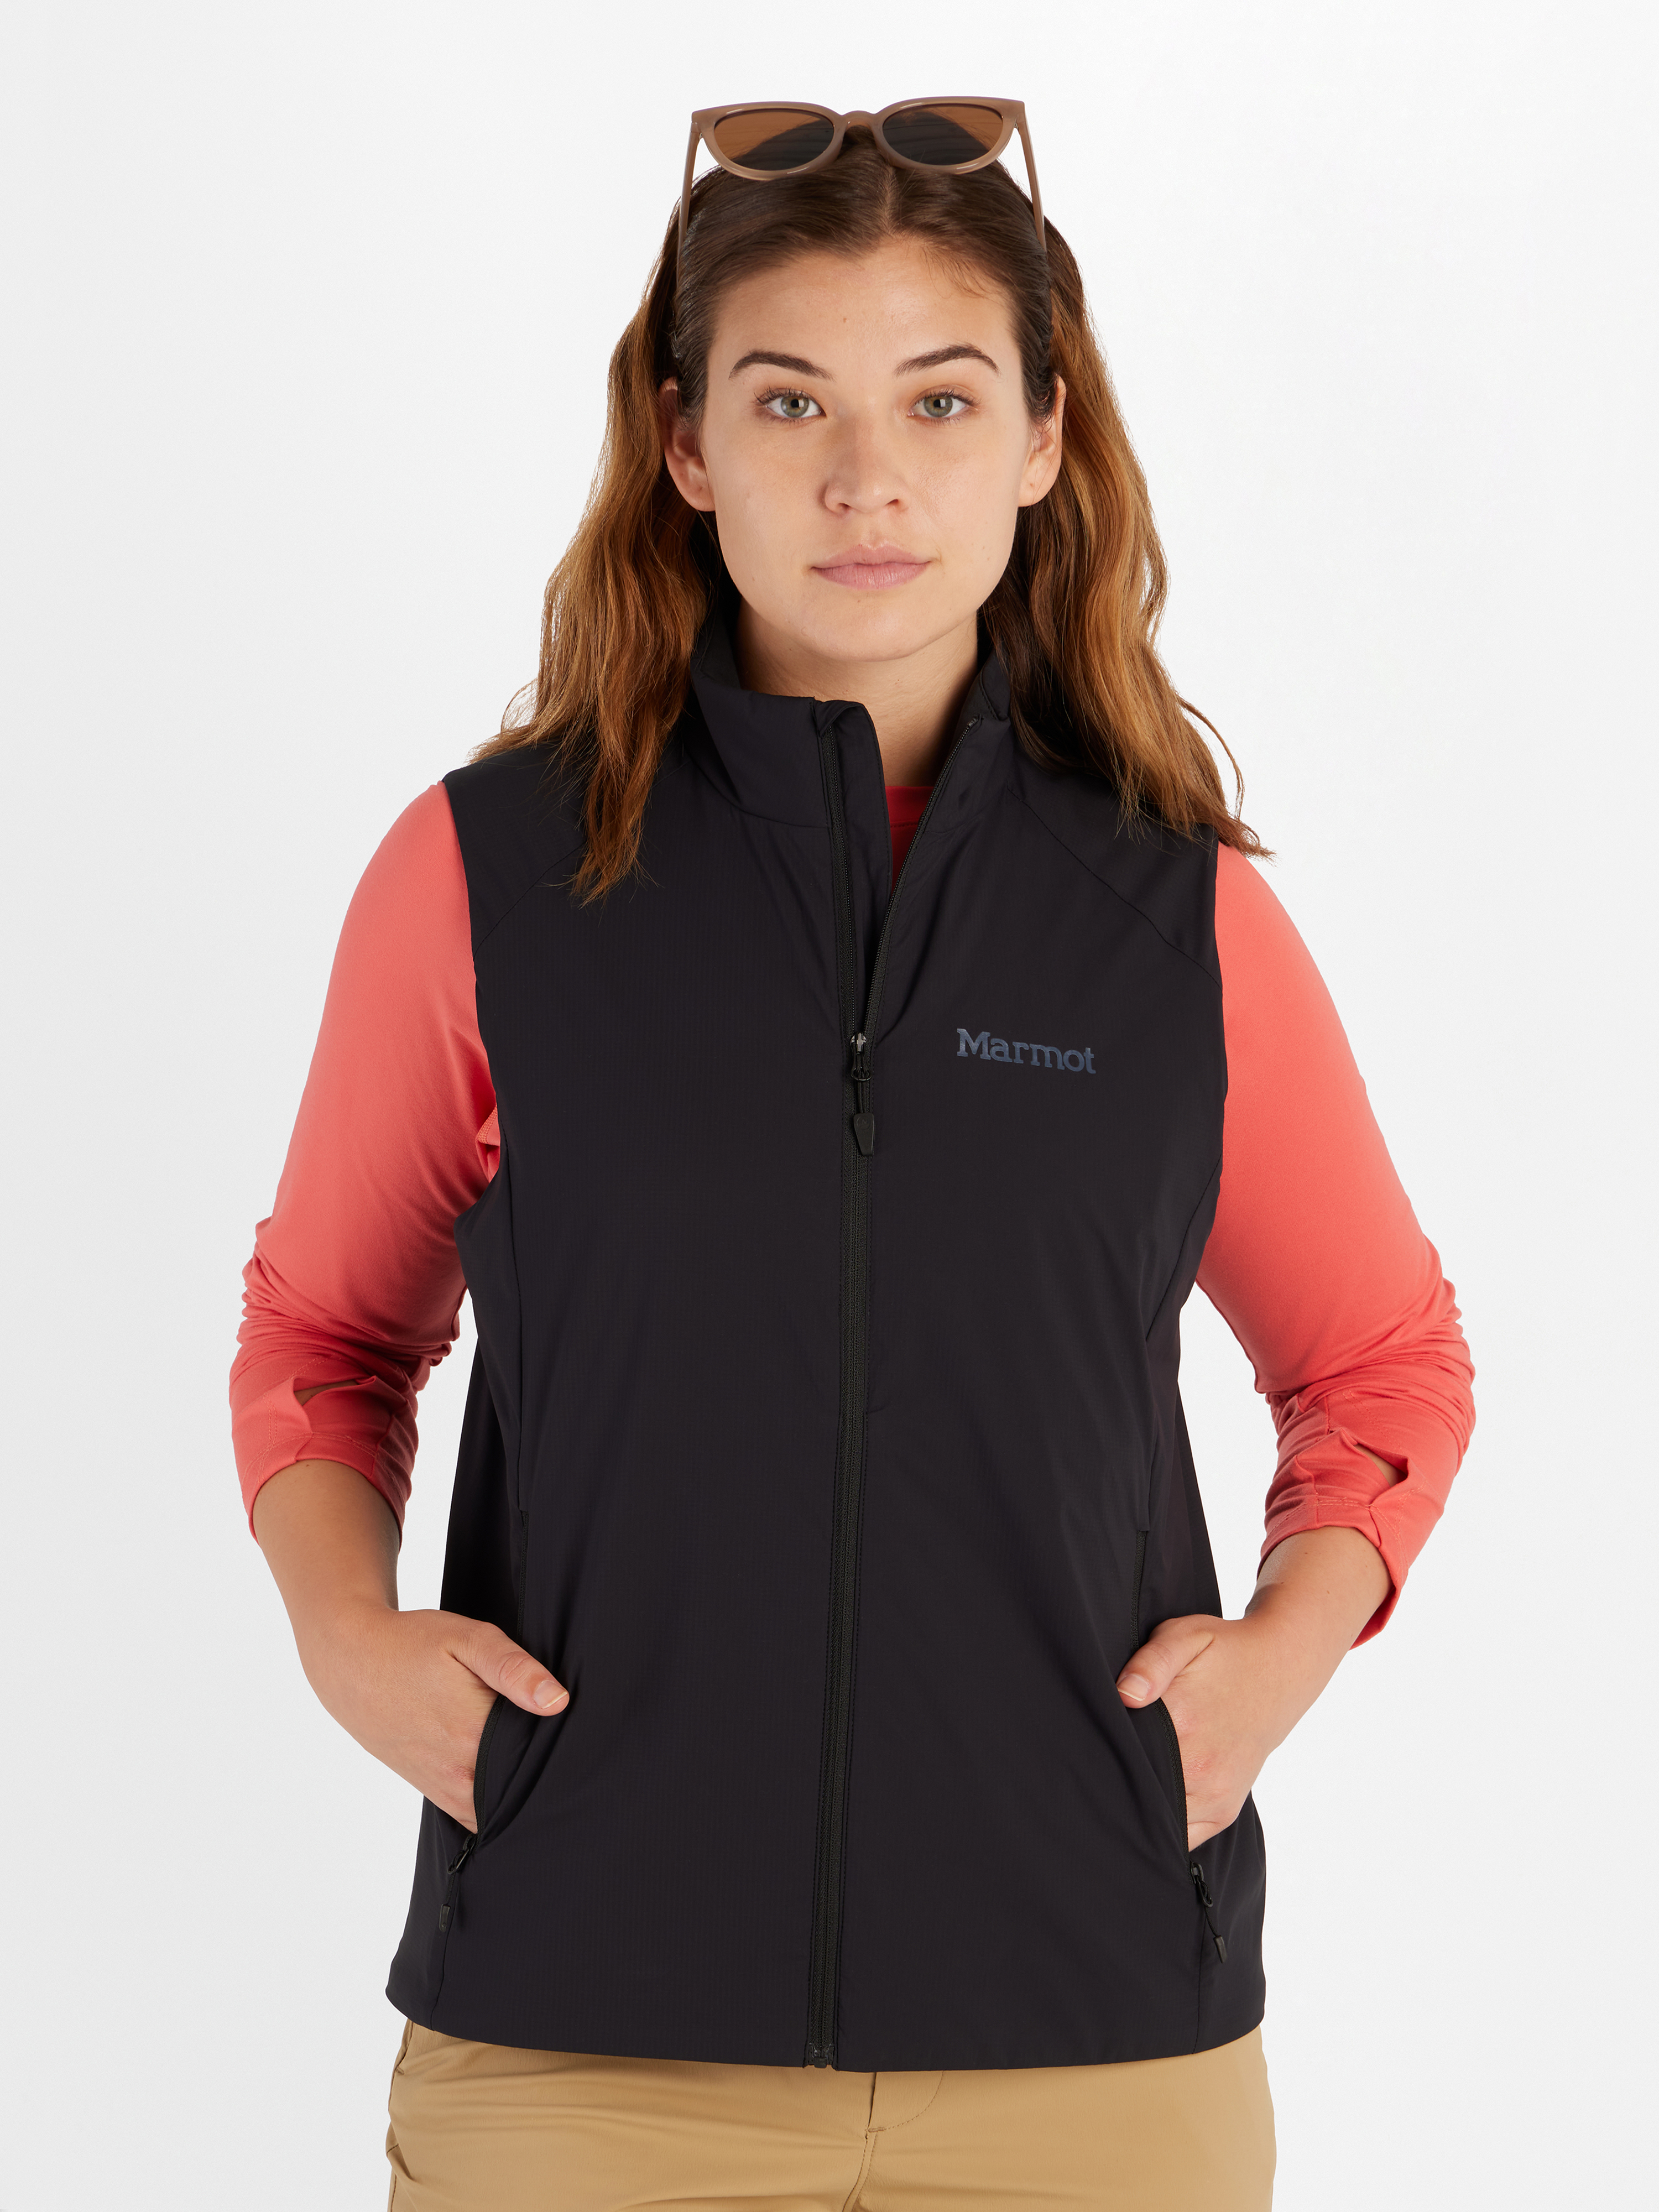 Women's Insulated & Fleece Vests | Marmot